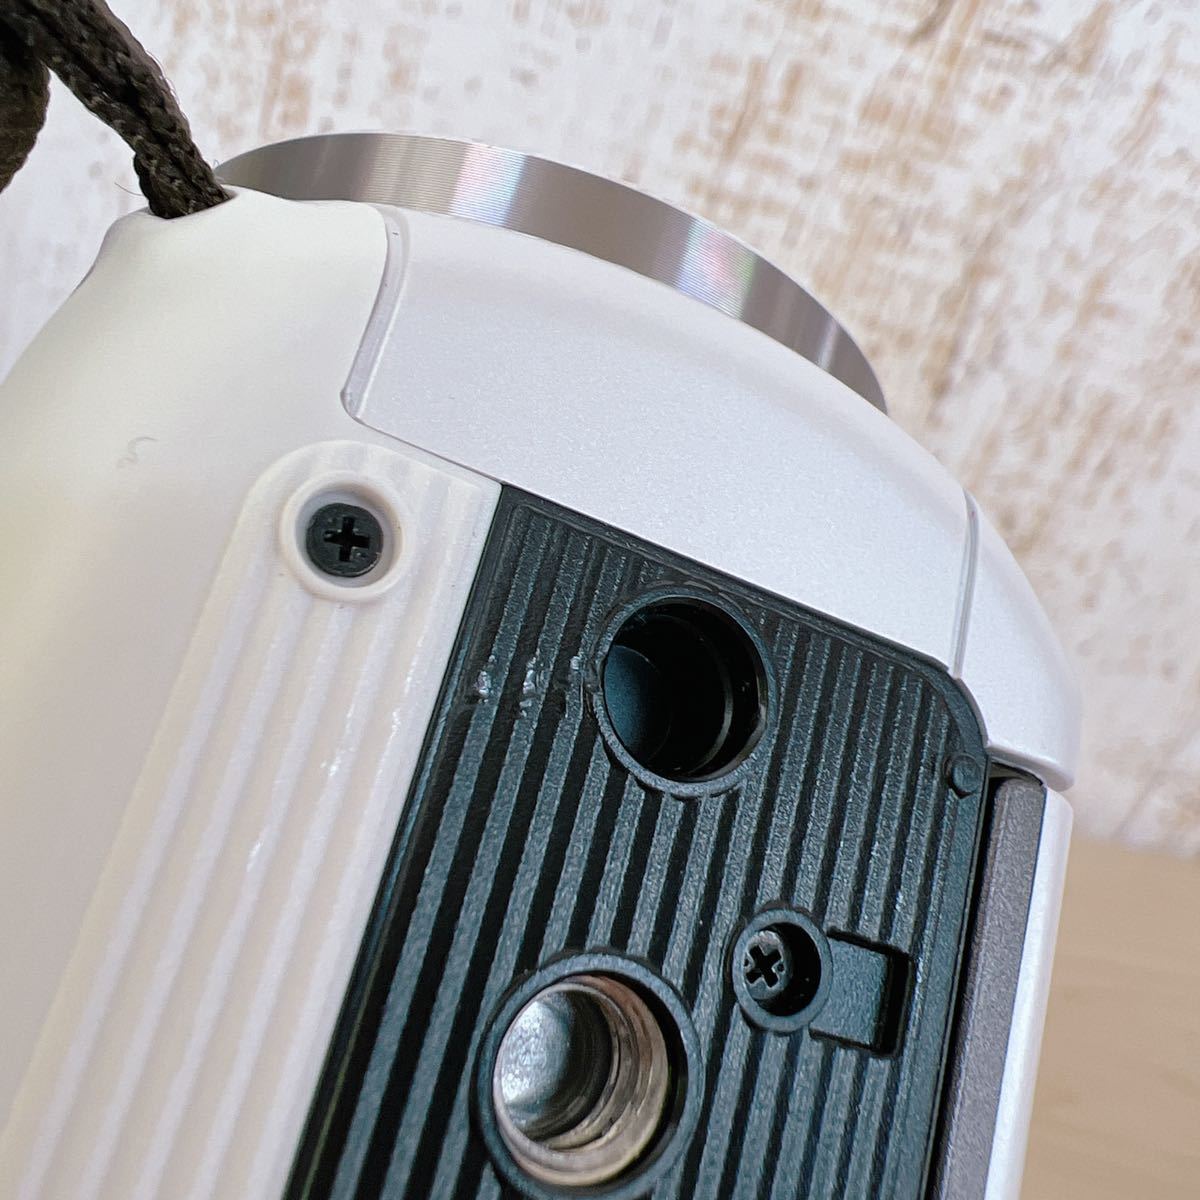 【 美品 】 Panasonic パナソニック HDビデオカメラ V360M 高倍率90倍ズーム ホワイト HC-V360M-W 予備バッテリー 2015年製 動作確認済 - 7